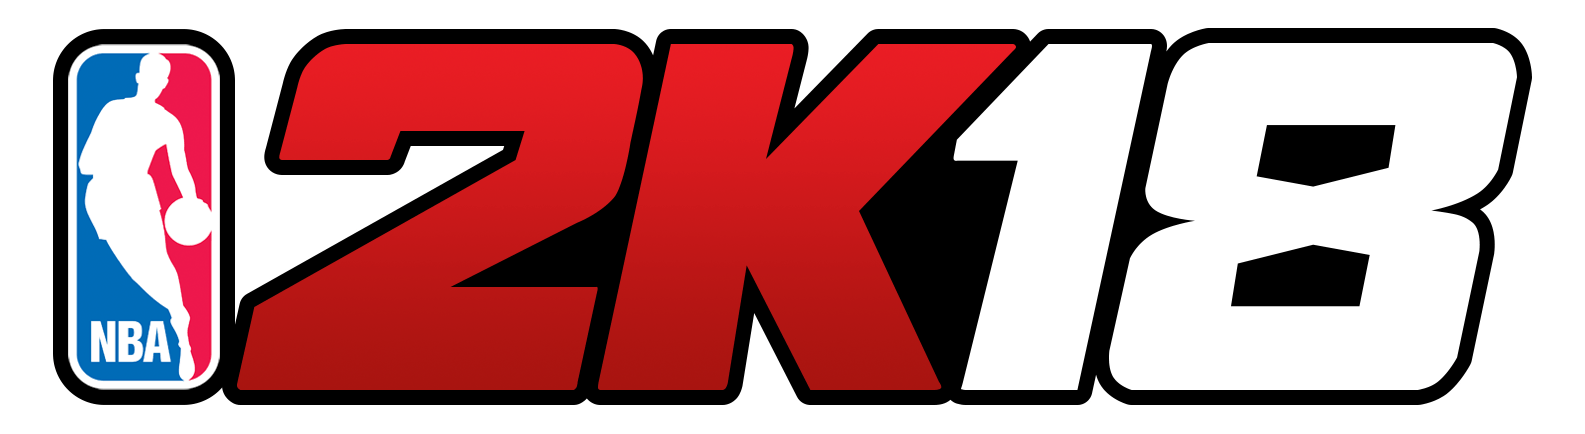 2K18 Logo - Nba 2k18 logo png 5 PNG Image